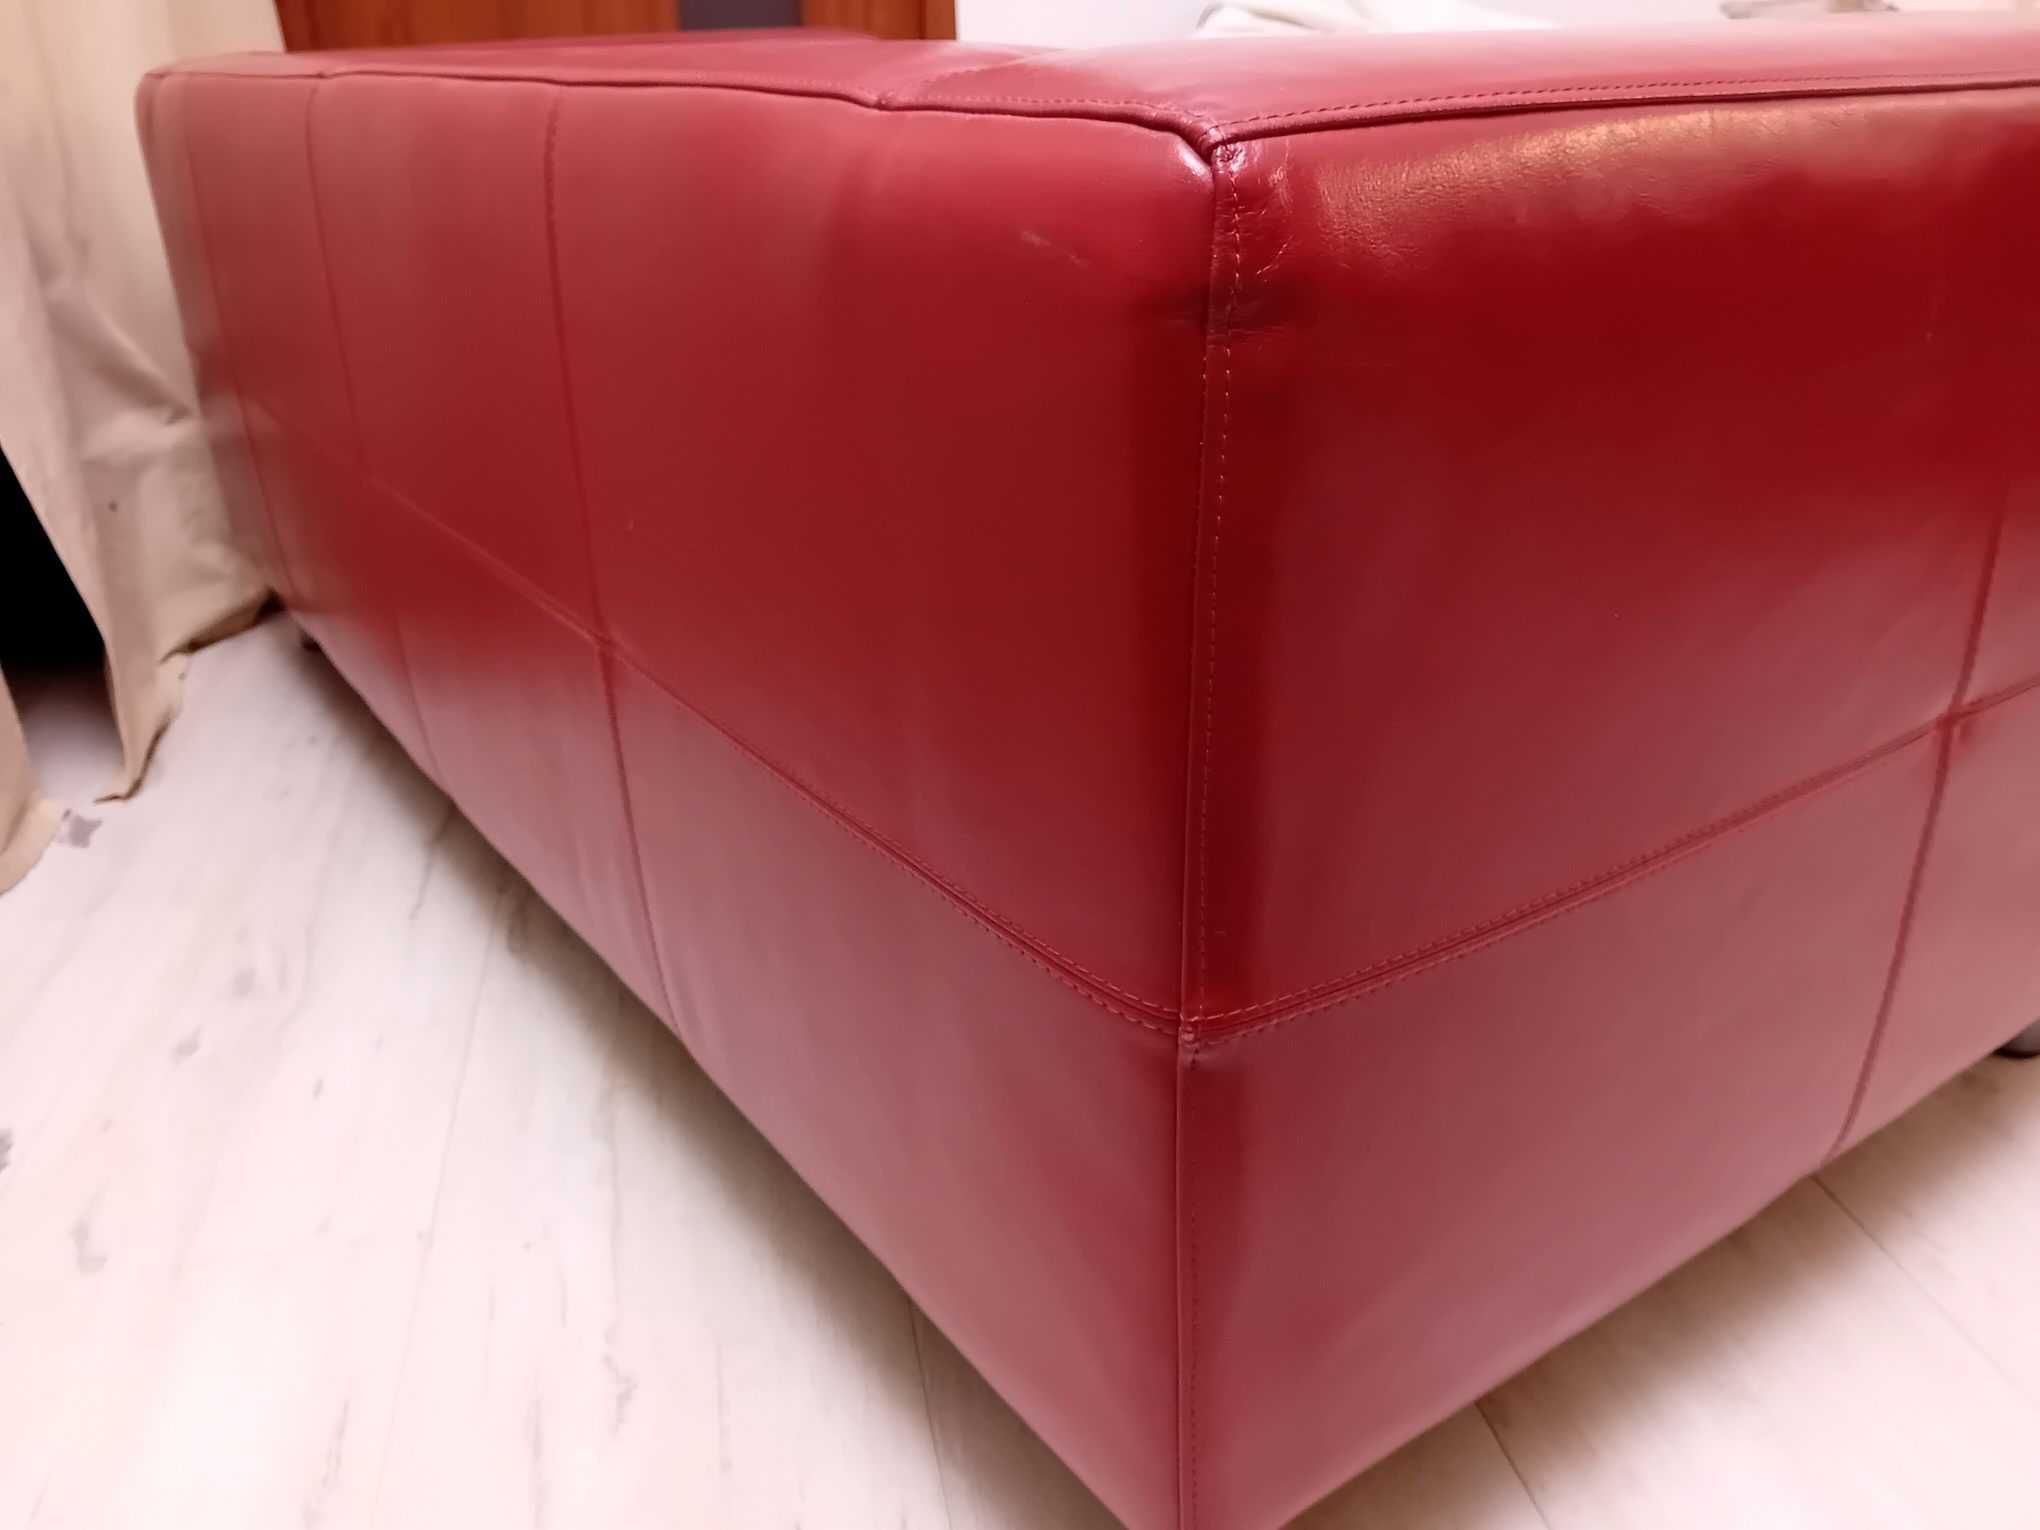 Sofa Ikea Klippan skóra naturalna czerwona + 4 pokrowce (trzy kolory)